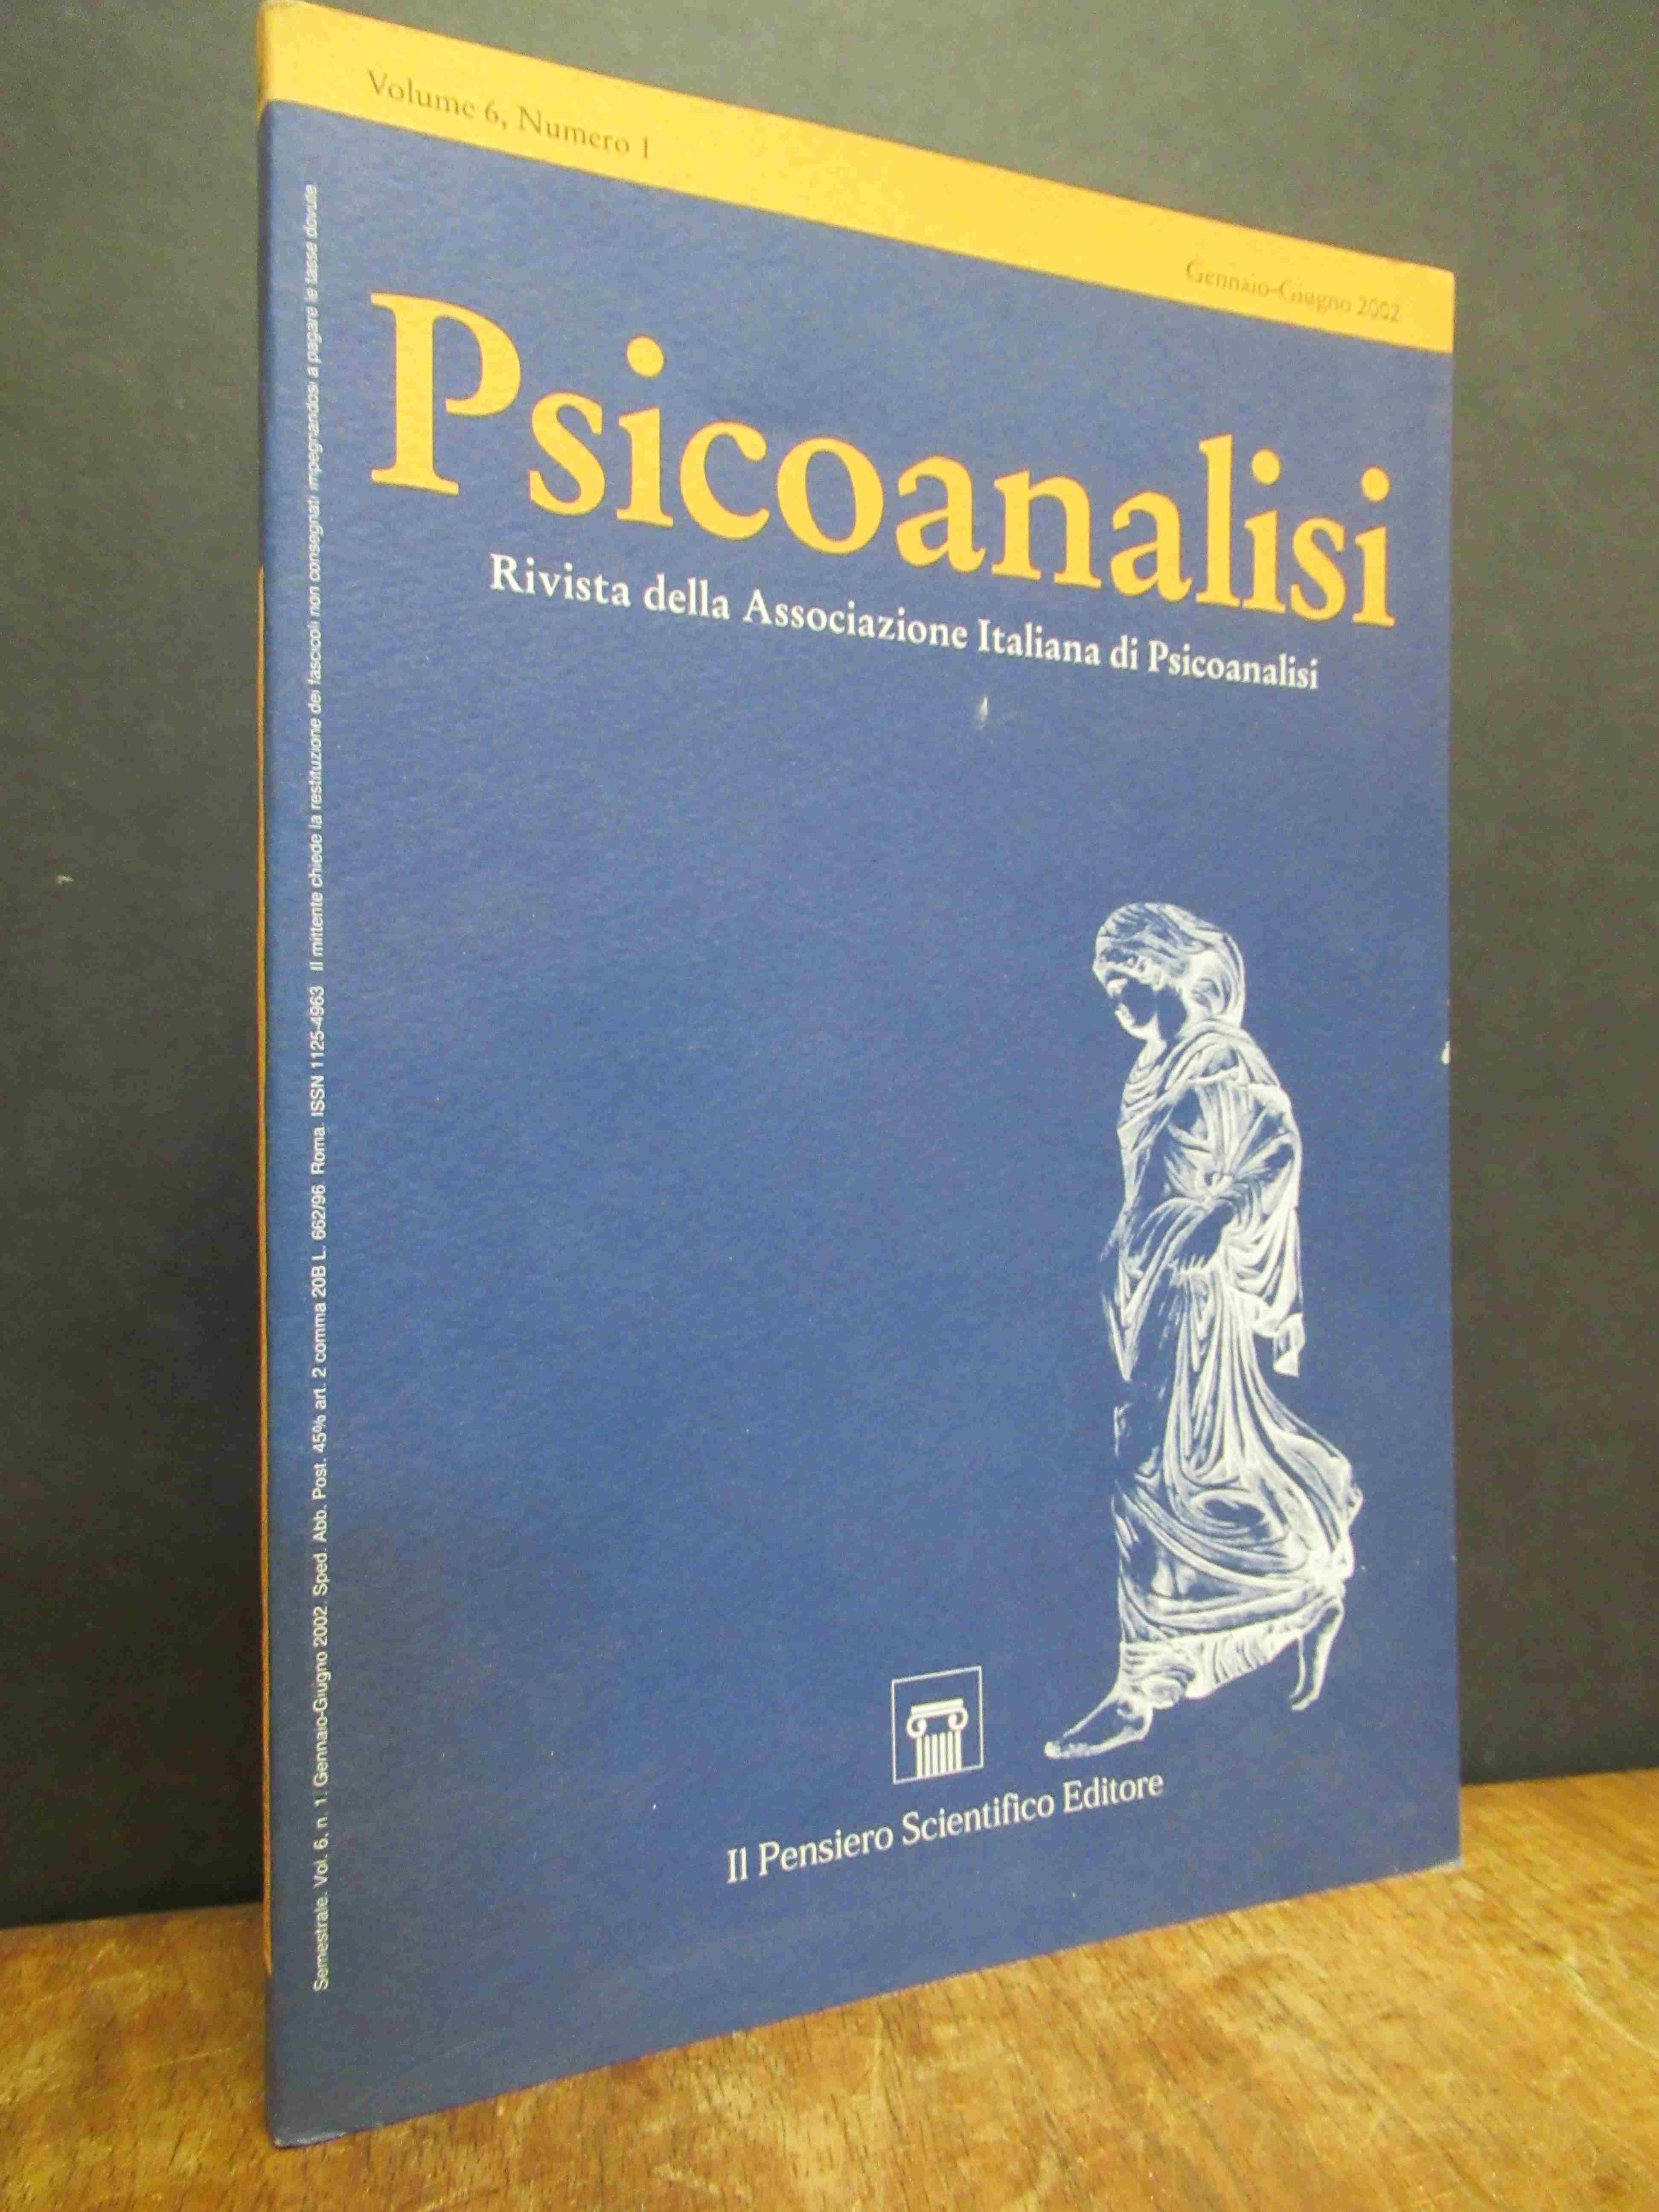 Psicoanalisi – Rivista della Associazione Italiana di Psicoanalisi, Volume 6, Nu